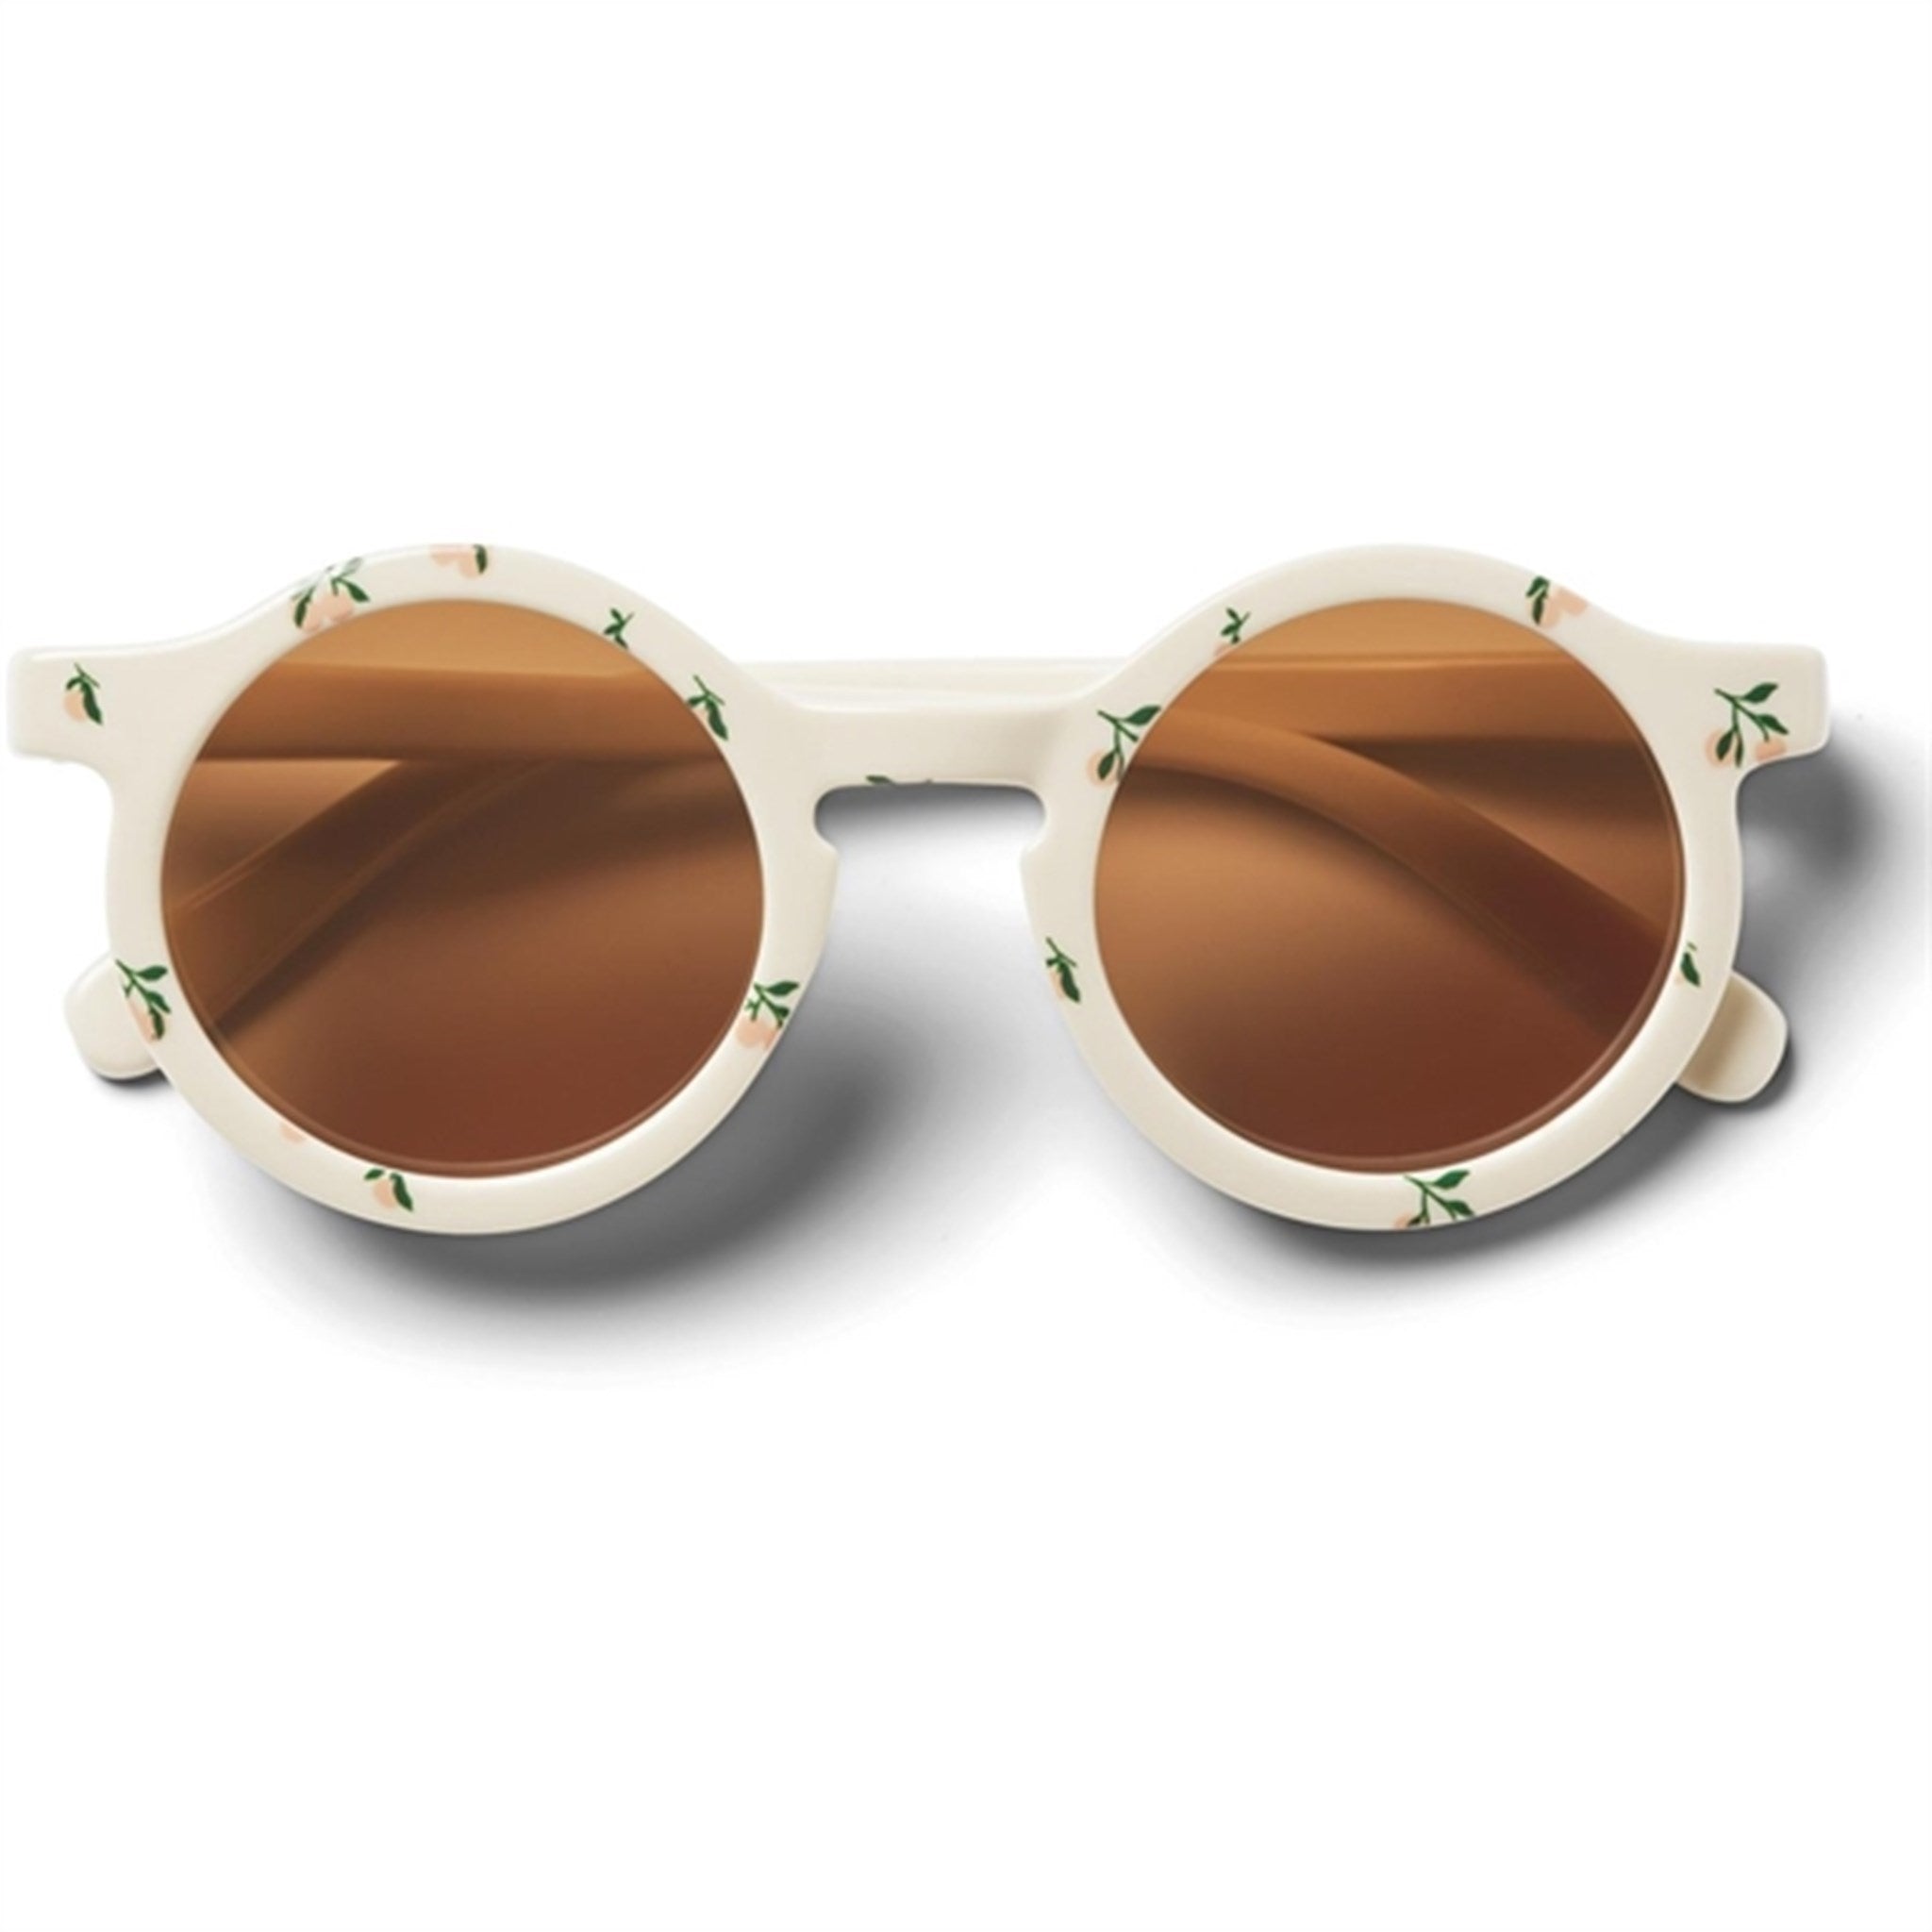 Liewood Darla Sunglasses 1 - 3 Y/O Peach Sea Shell 2